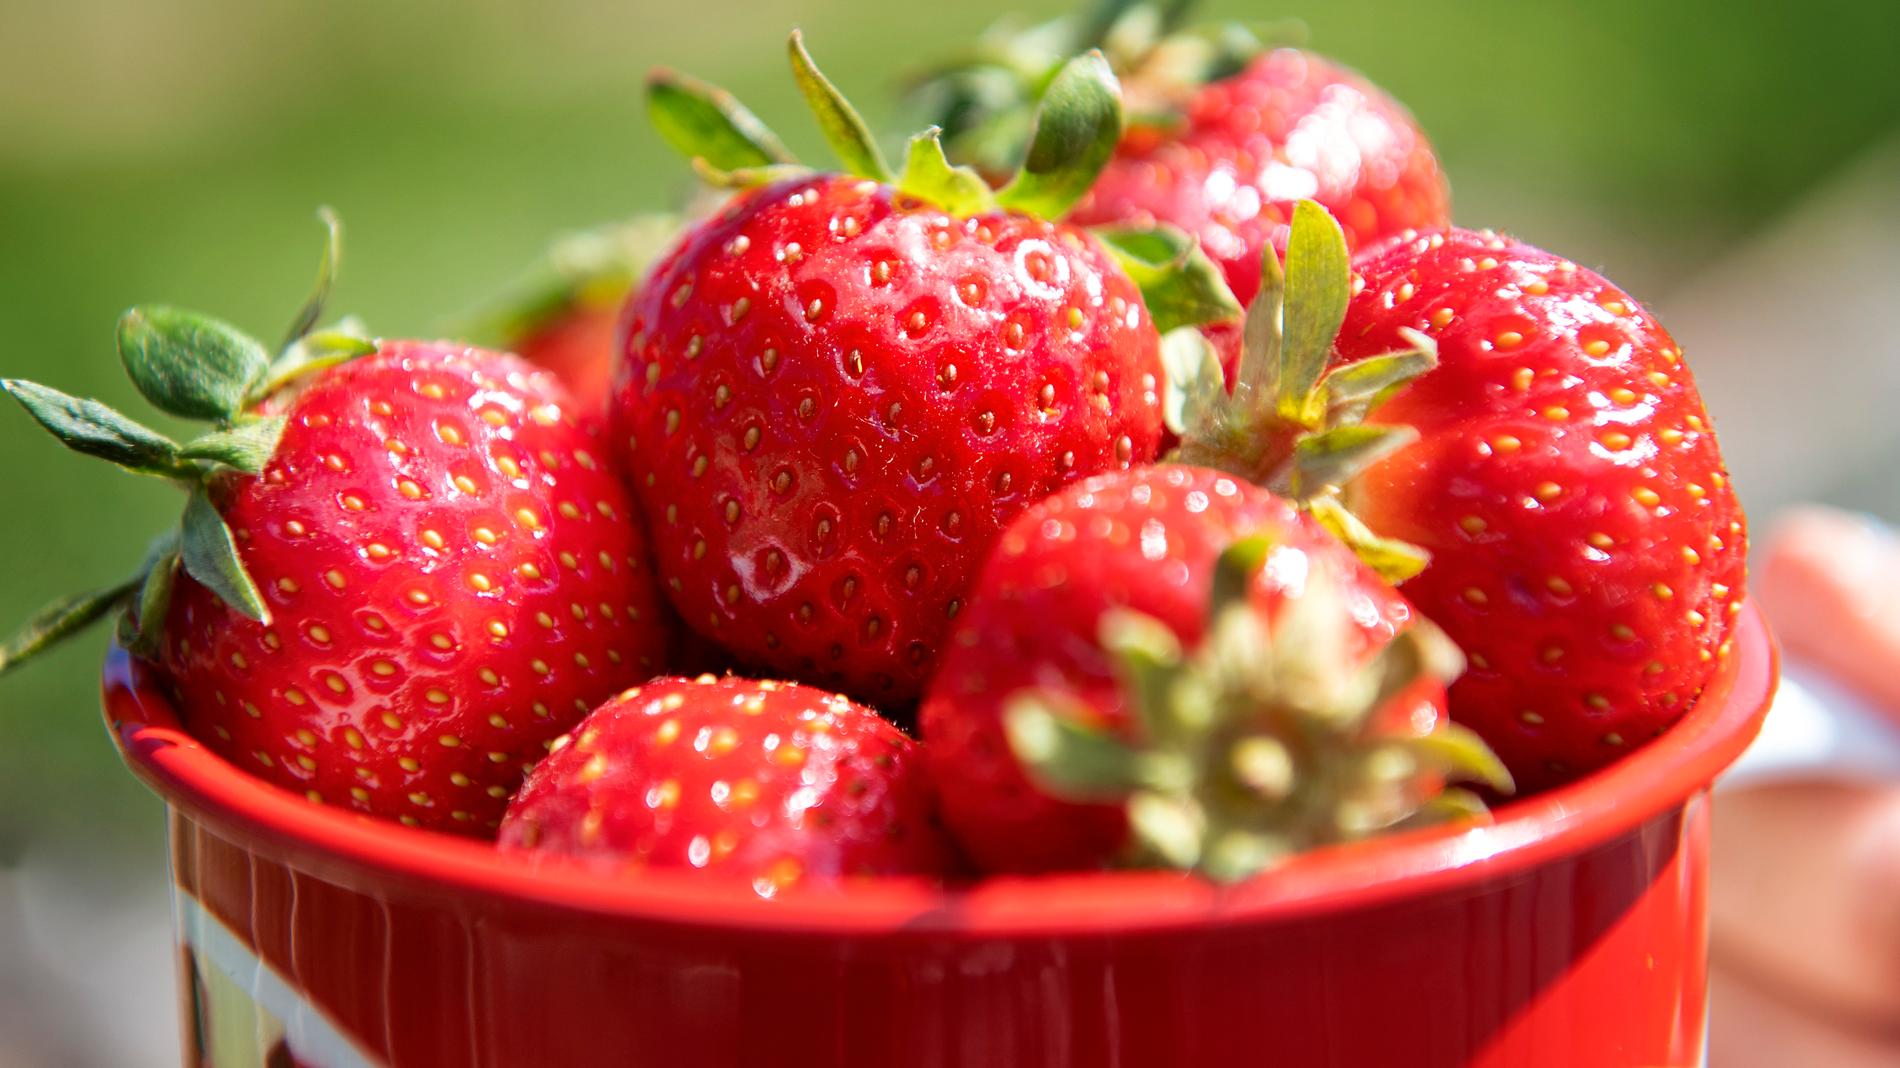 En livsmedelskedja i Nya Zeeland drar in australiska jordgubbar sedan en synål hittats instucken i ett parti. Arkivbild.